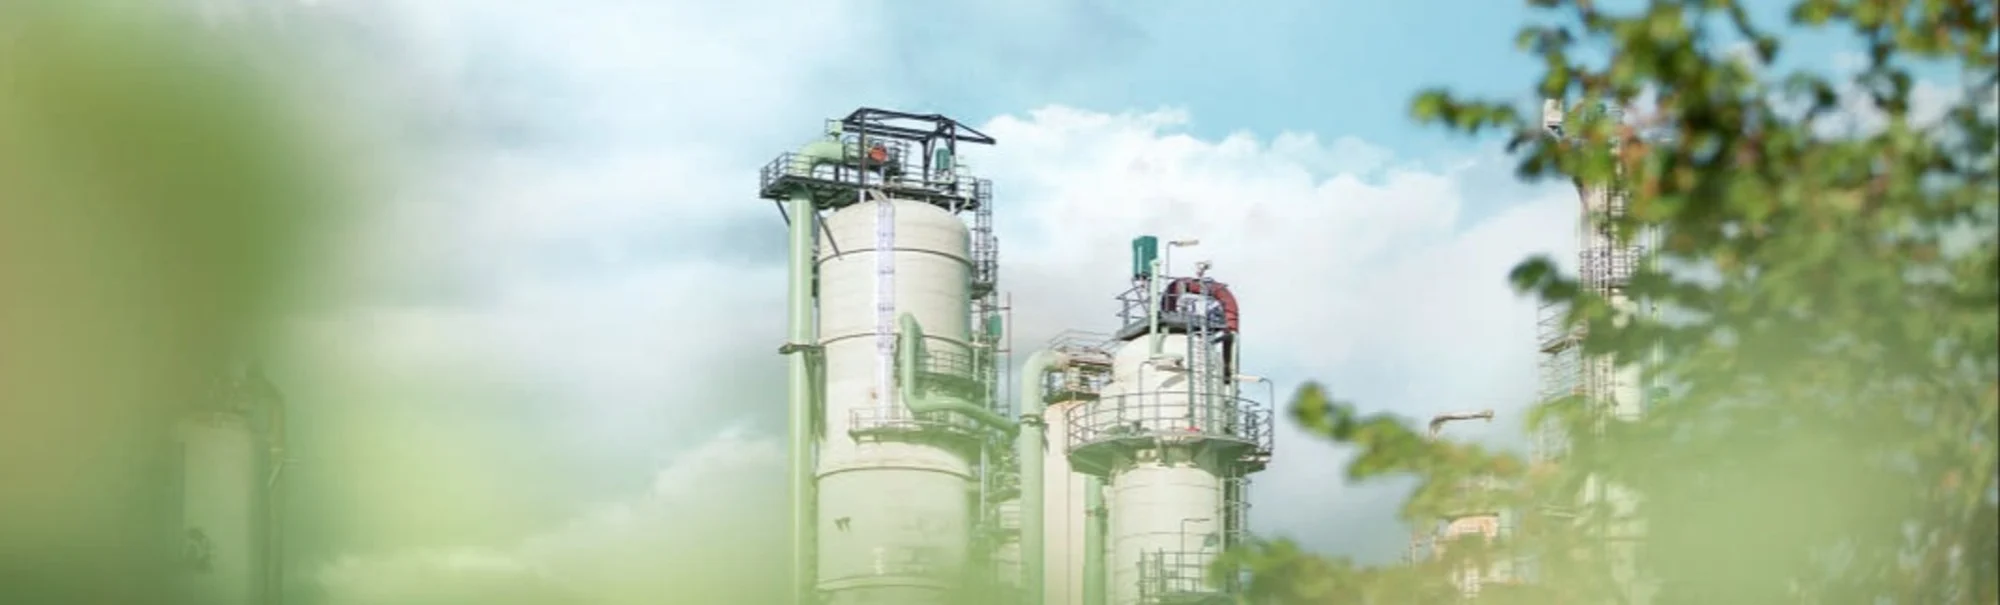 Porvoo refinery and feedstock processing | Neste